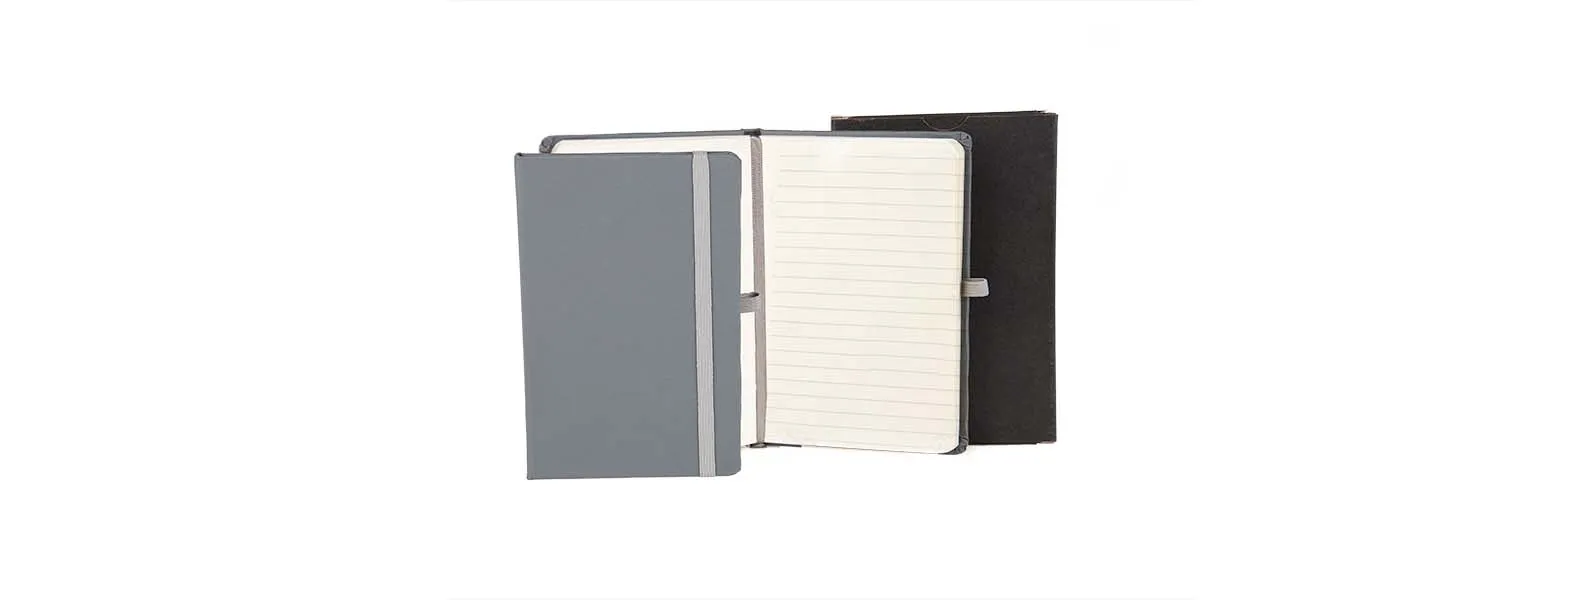 Caderno para anotações cinza com capa dura. Conta com 80 folhas pautadas, marcador de página, porta caneta e elástico para fechamento. Gramatura da folha de 70 g/m2.